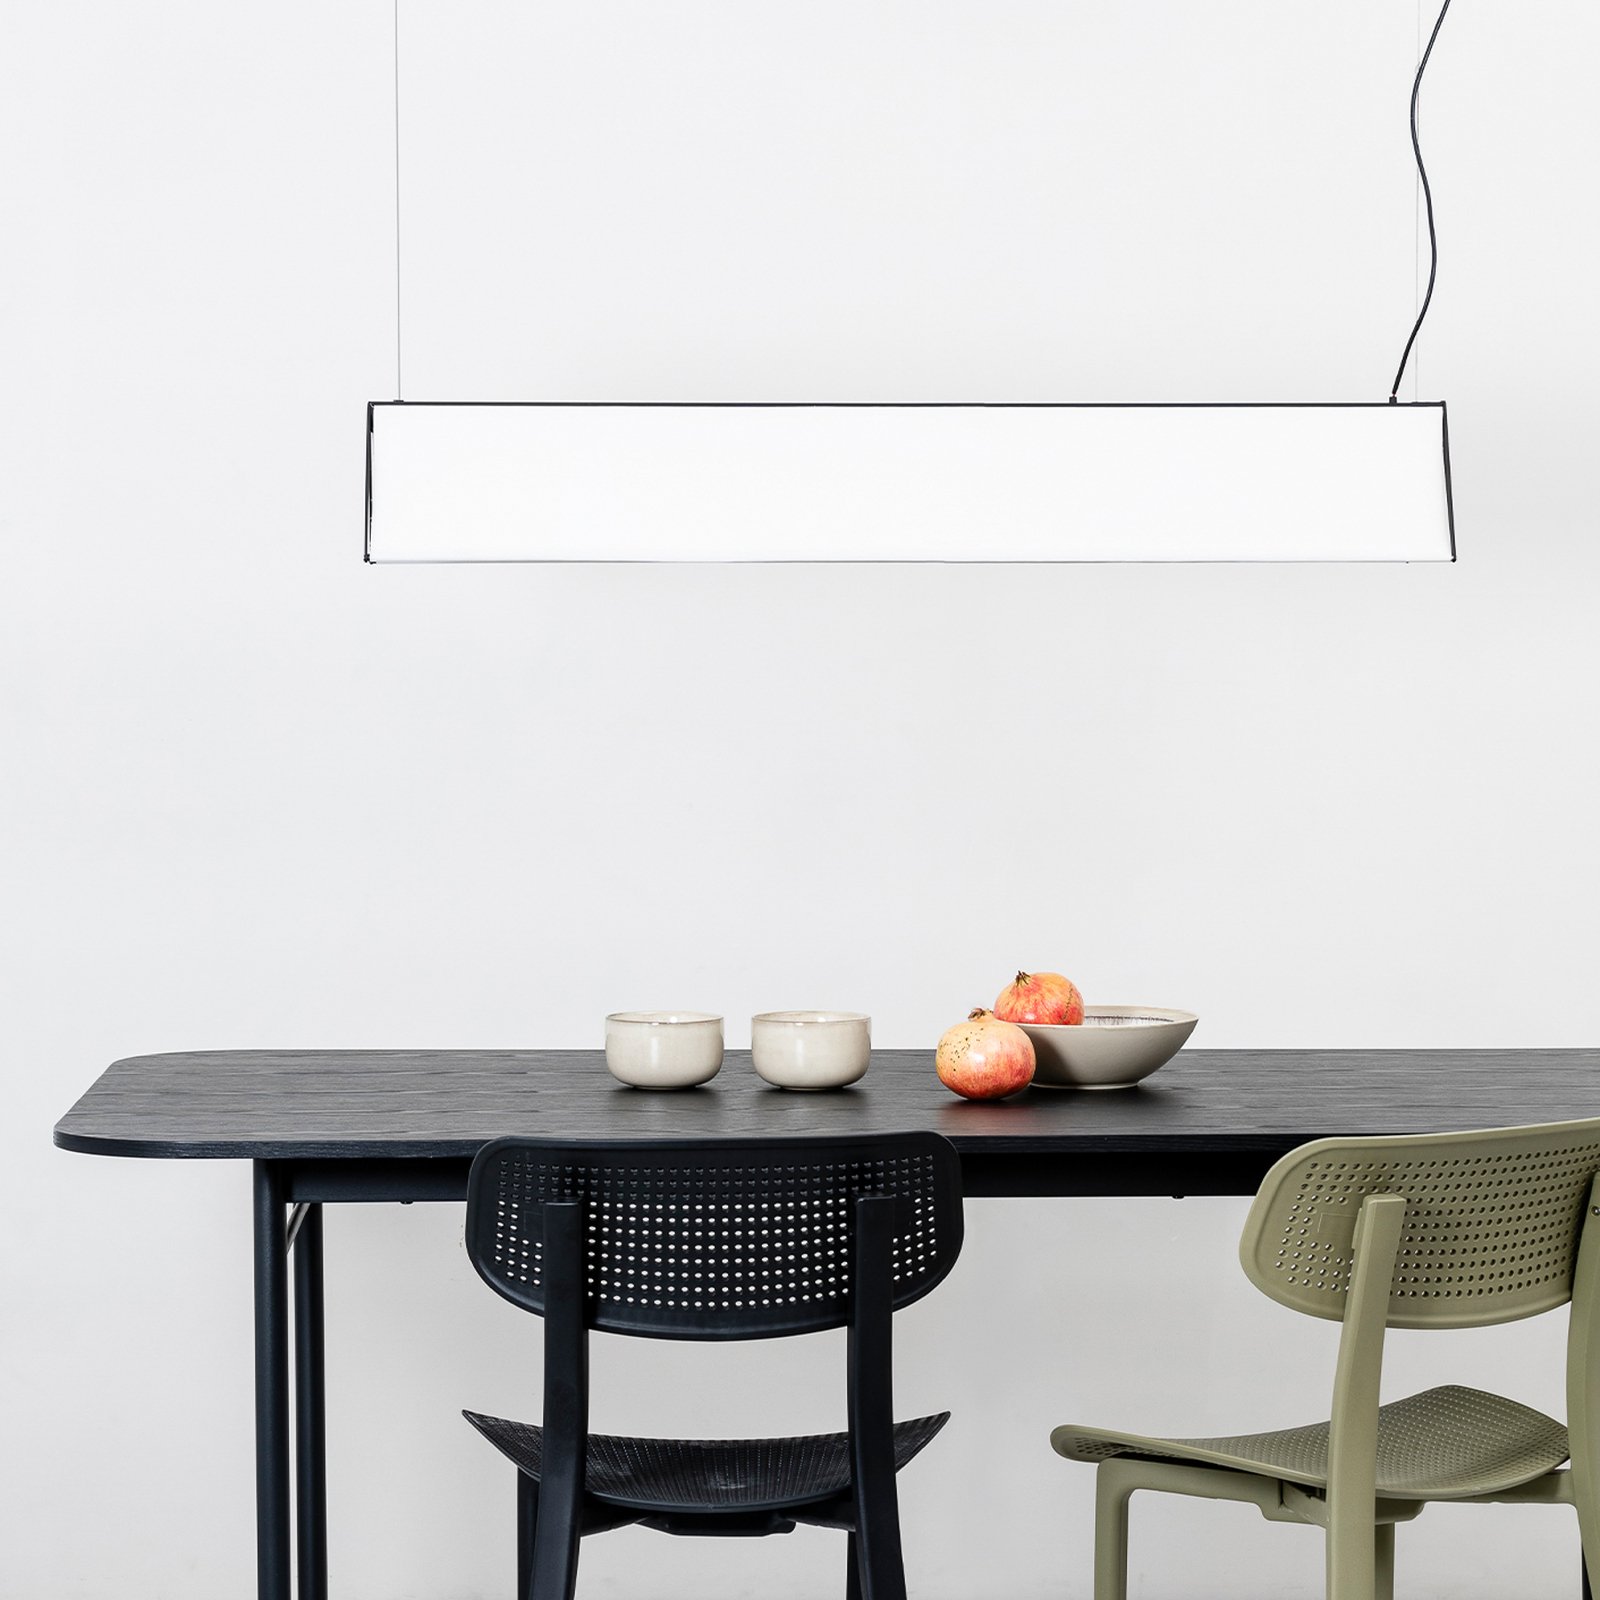 Ludovico Povrchové závěsné svítidlo LED, 115 cm, bílé